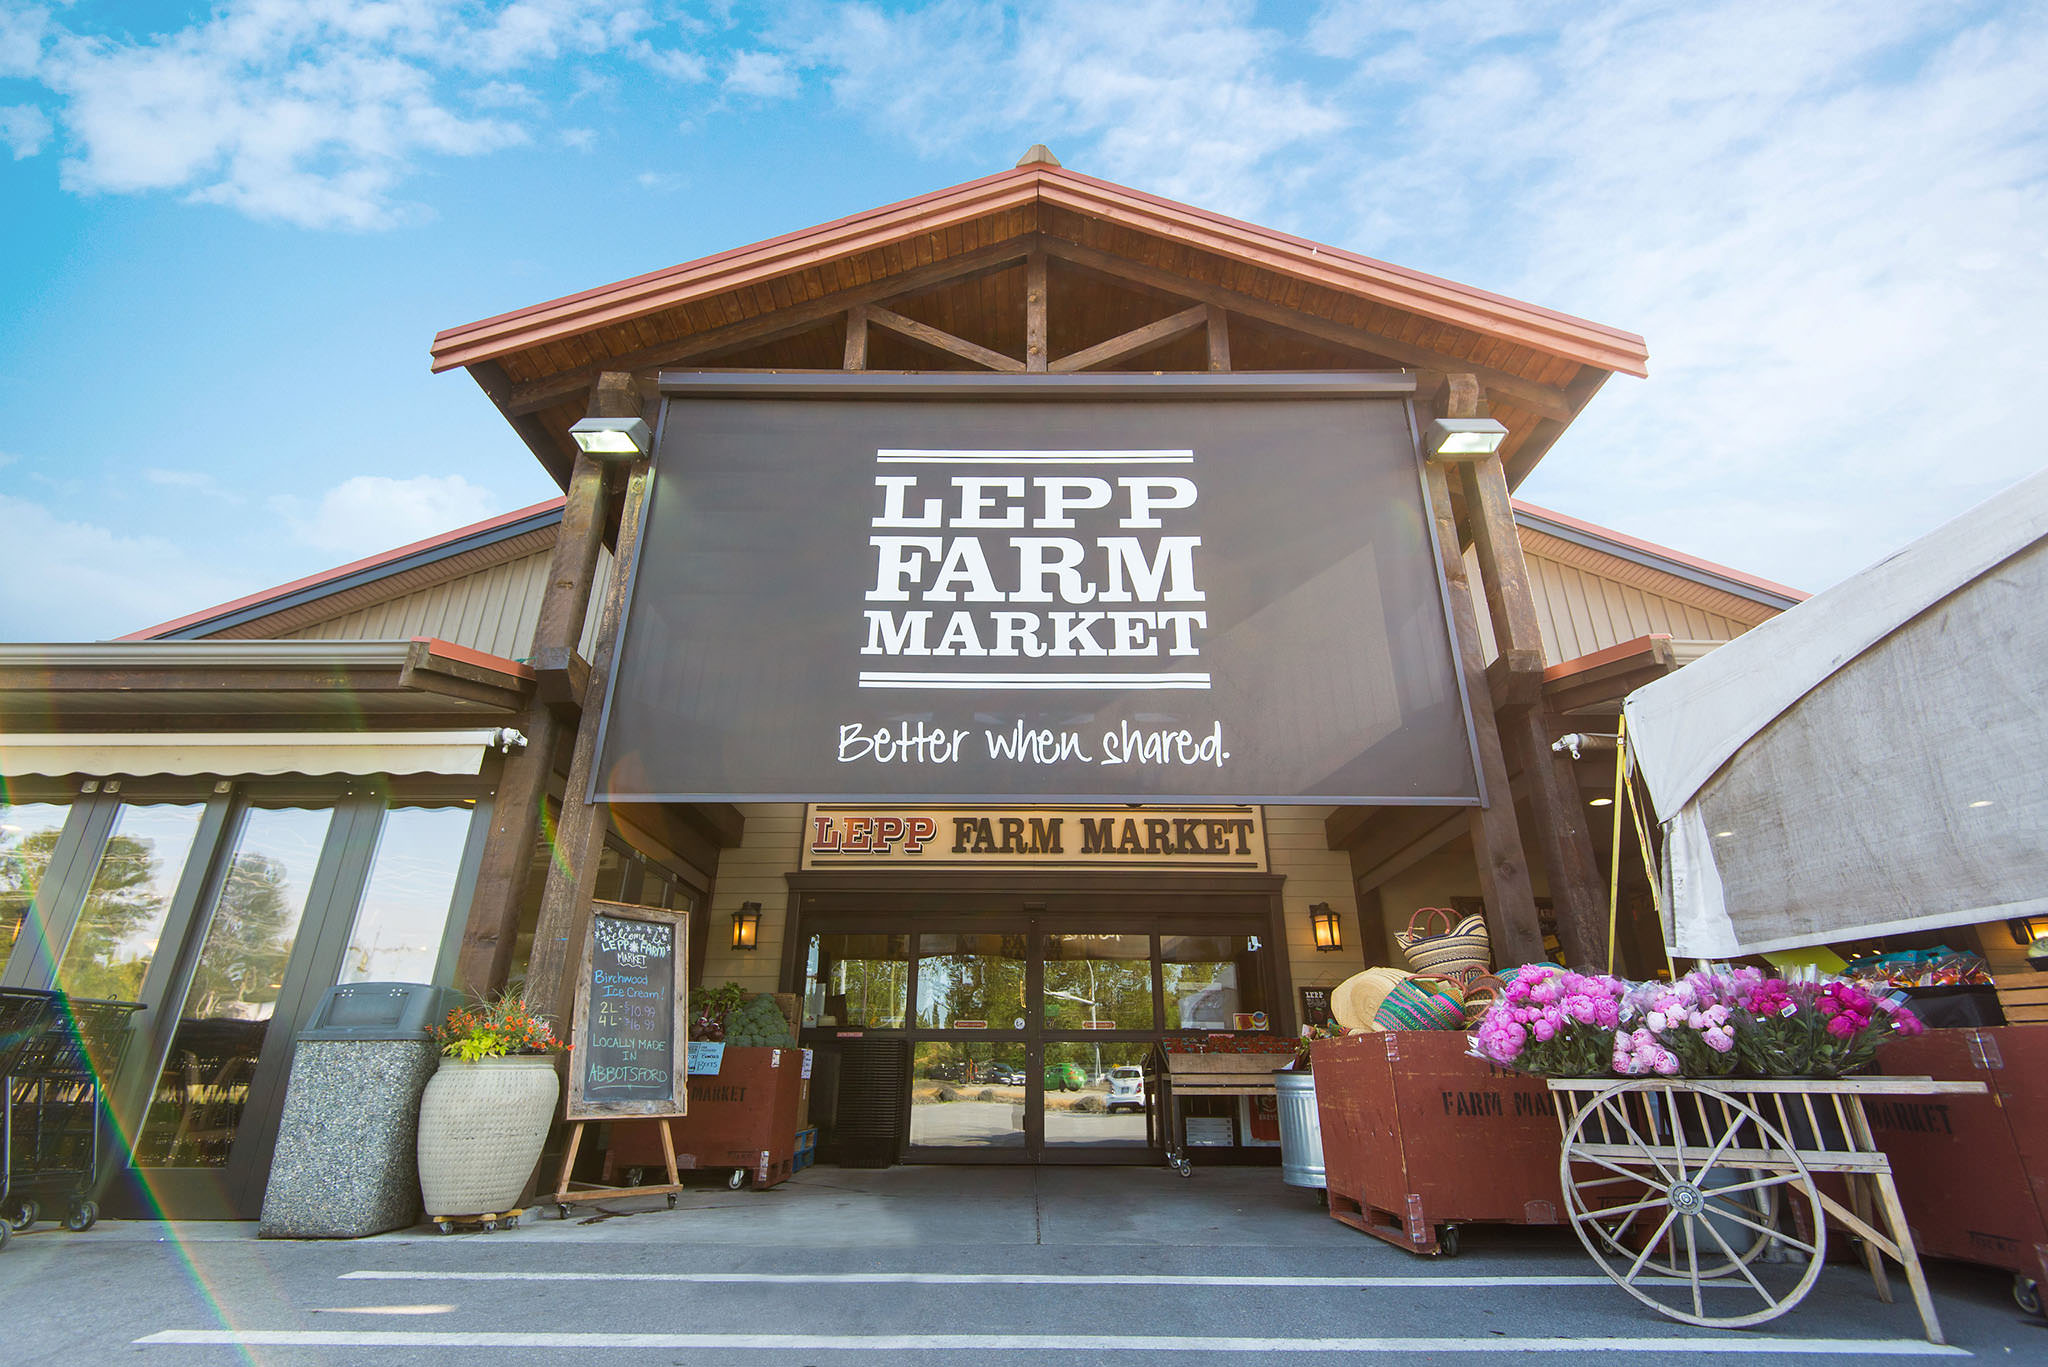 Lepp Farm Market